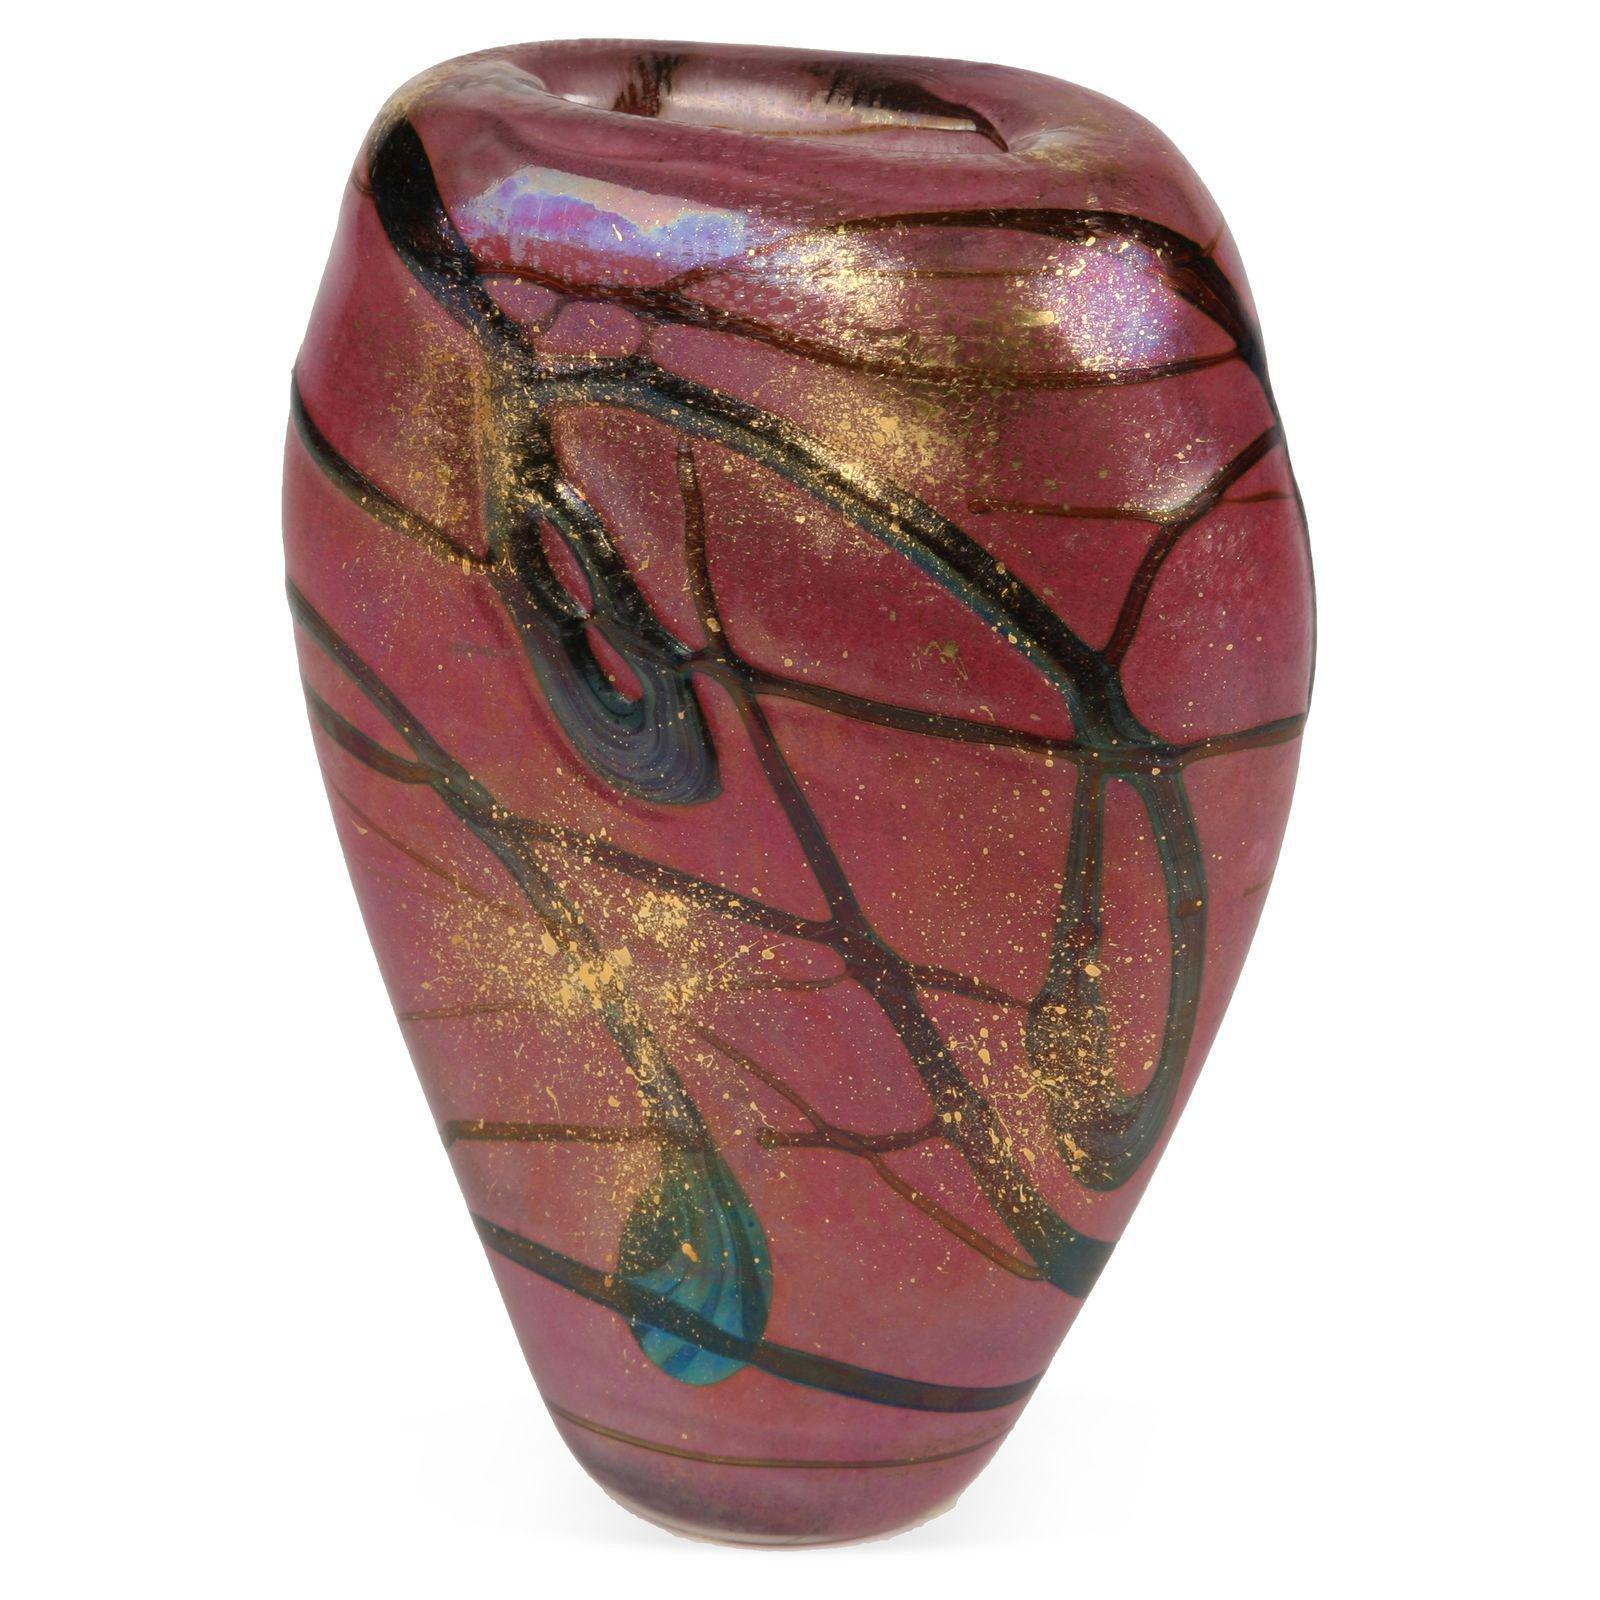 Vase aus französischem Kunstglas Luzoro, entworfen von Michèle Luzoro, bekannt als die Diva von Biot, die seit mehr als dreißig Jahren die internationale Glas-Kunstszene bereichert.
Gezeichnet Luzoro.